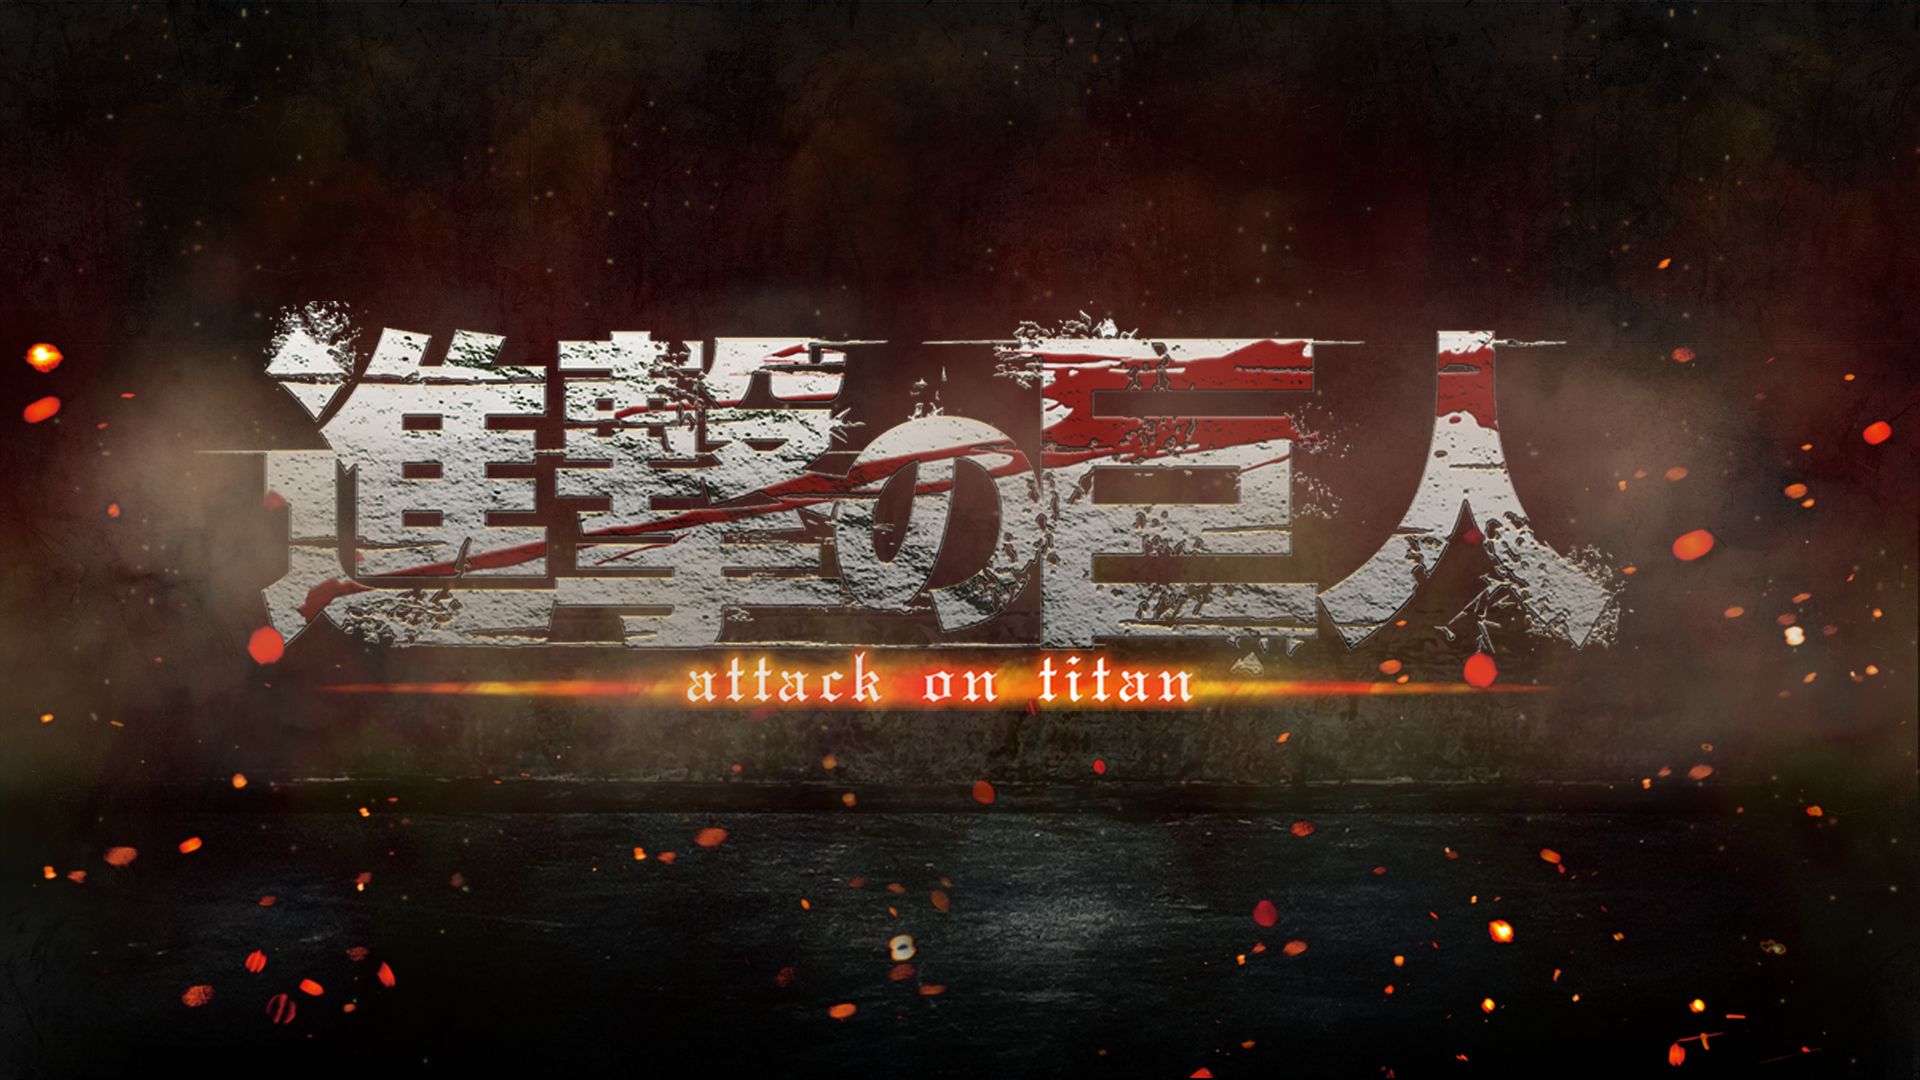 Baixar papel de parede para celular de Anime, Shingeki No Kyojin, Ataque Dos Titãs gratuito.